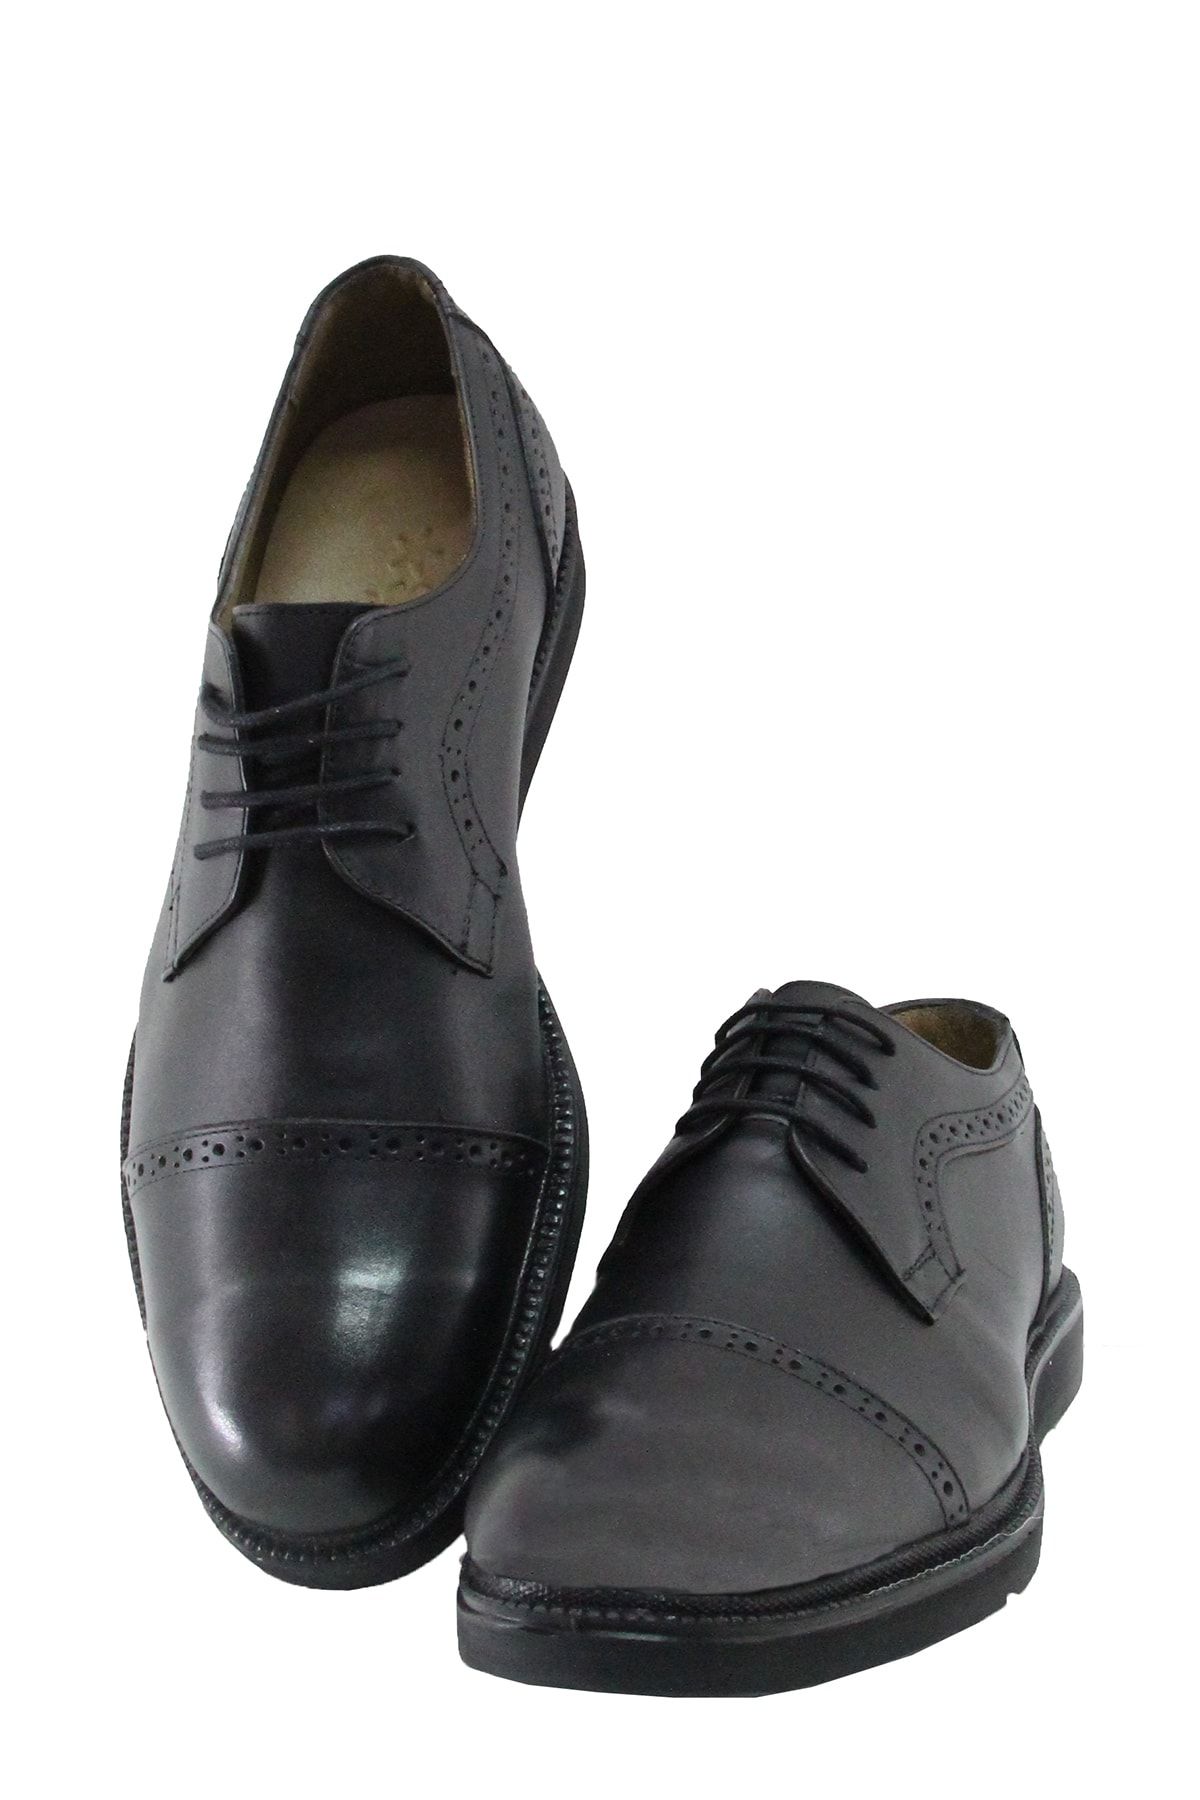 Sterk Ayakkabı Erkek Siyah Deri Klasik Ayakkabı